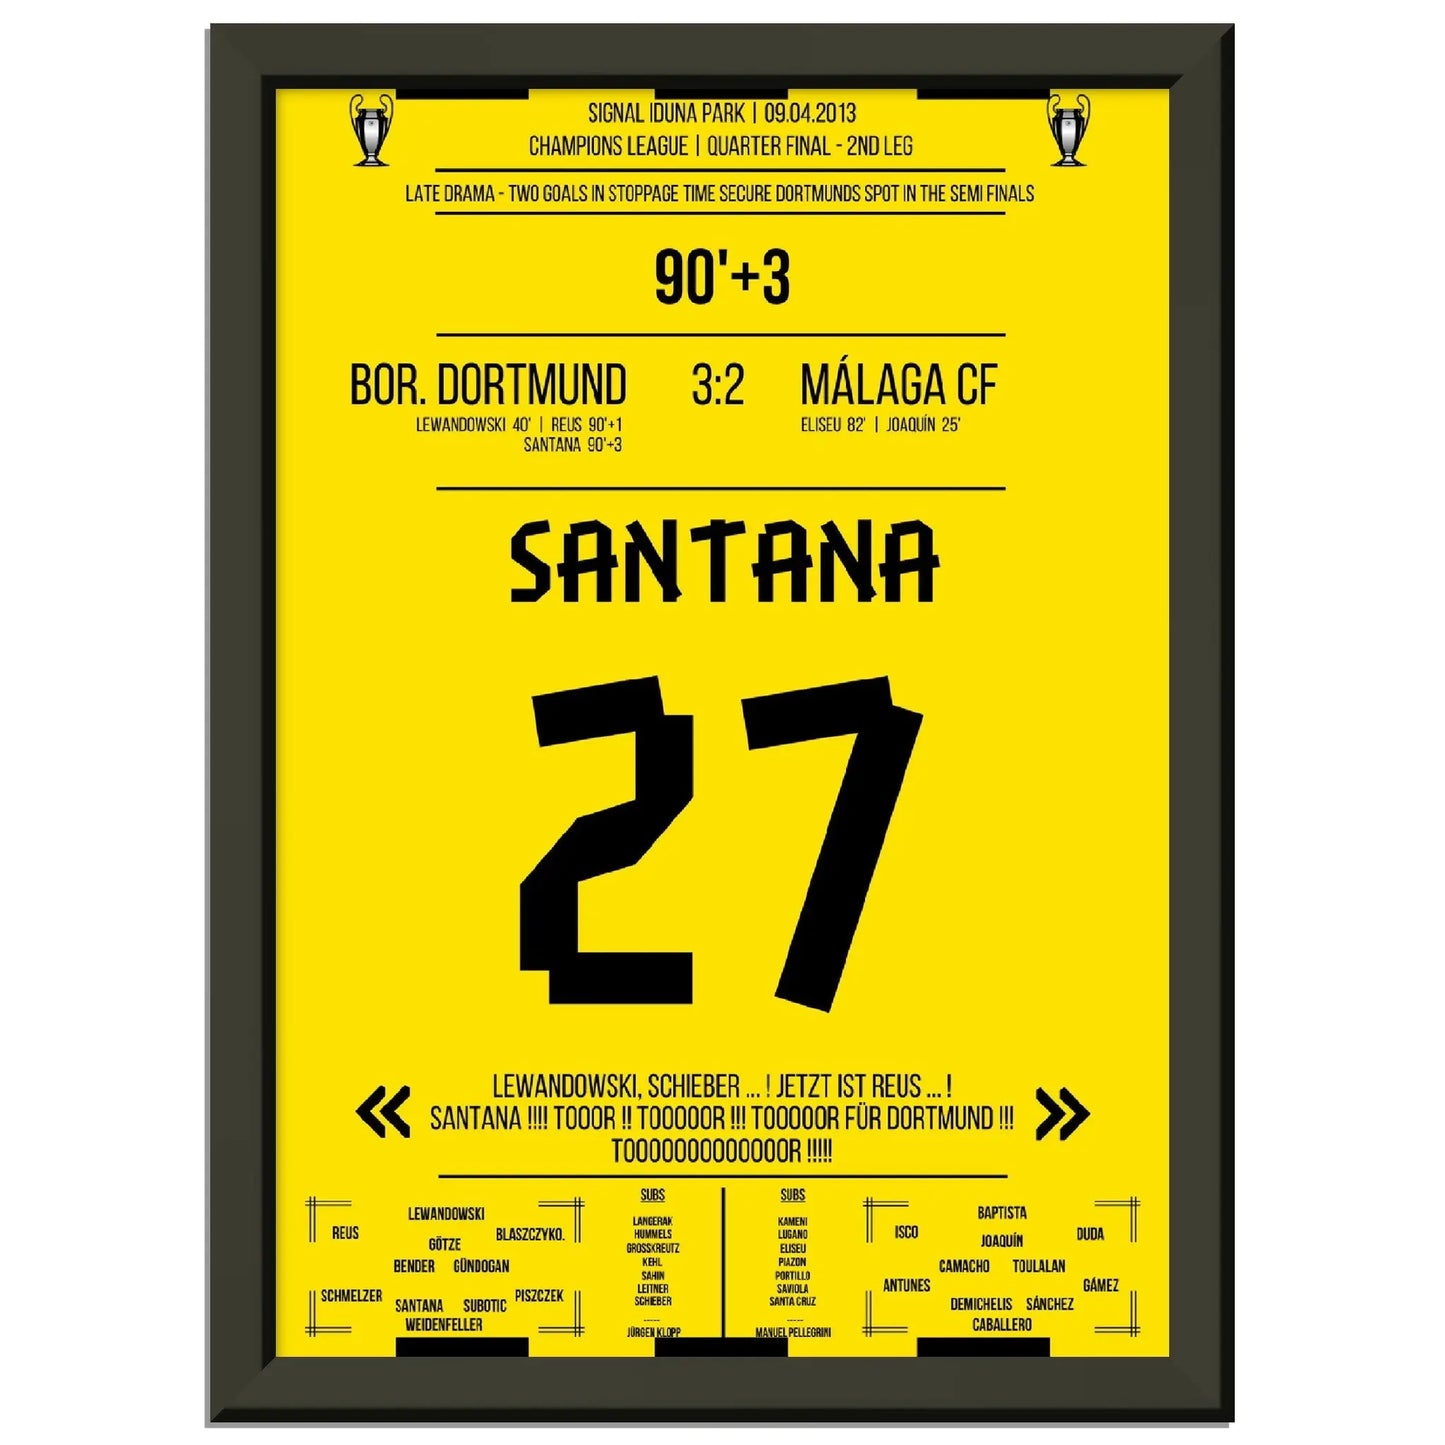 Santana's Siegtreffer bei Dortmunds sensationeller Aufholjagd gegen Malaga Champions League 2012/2013 